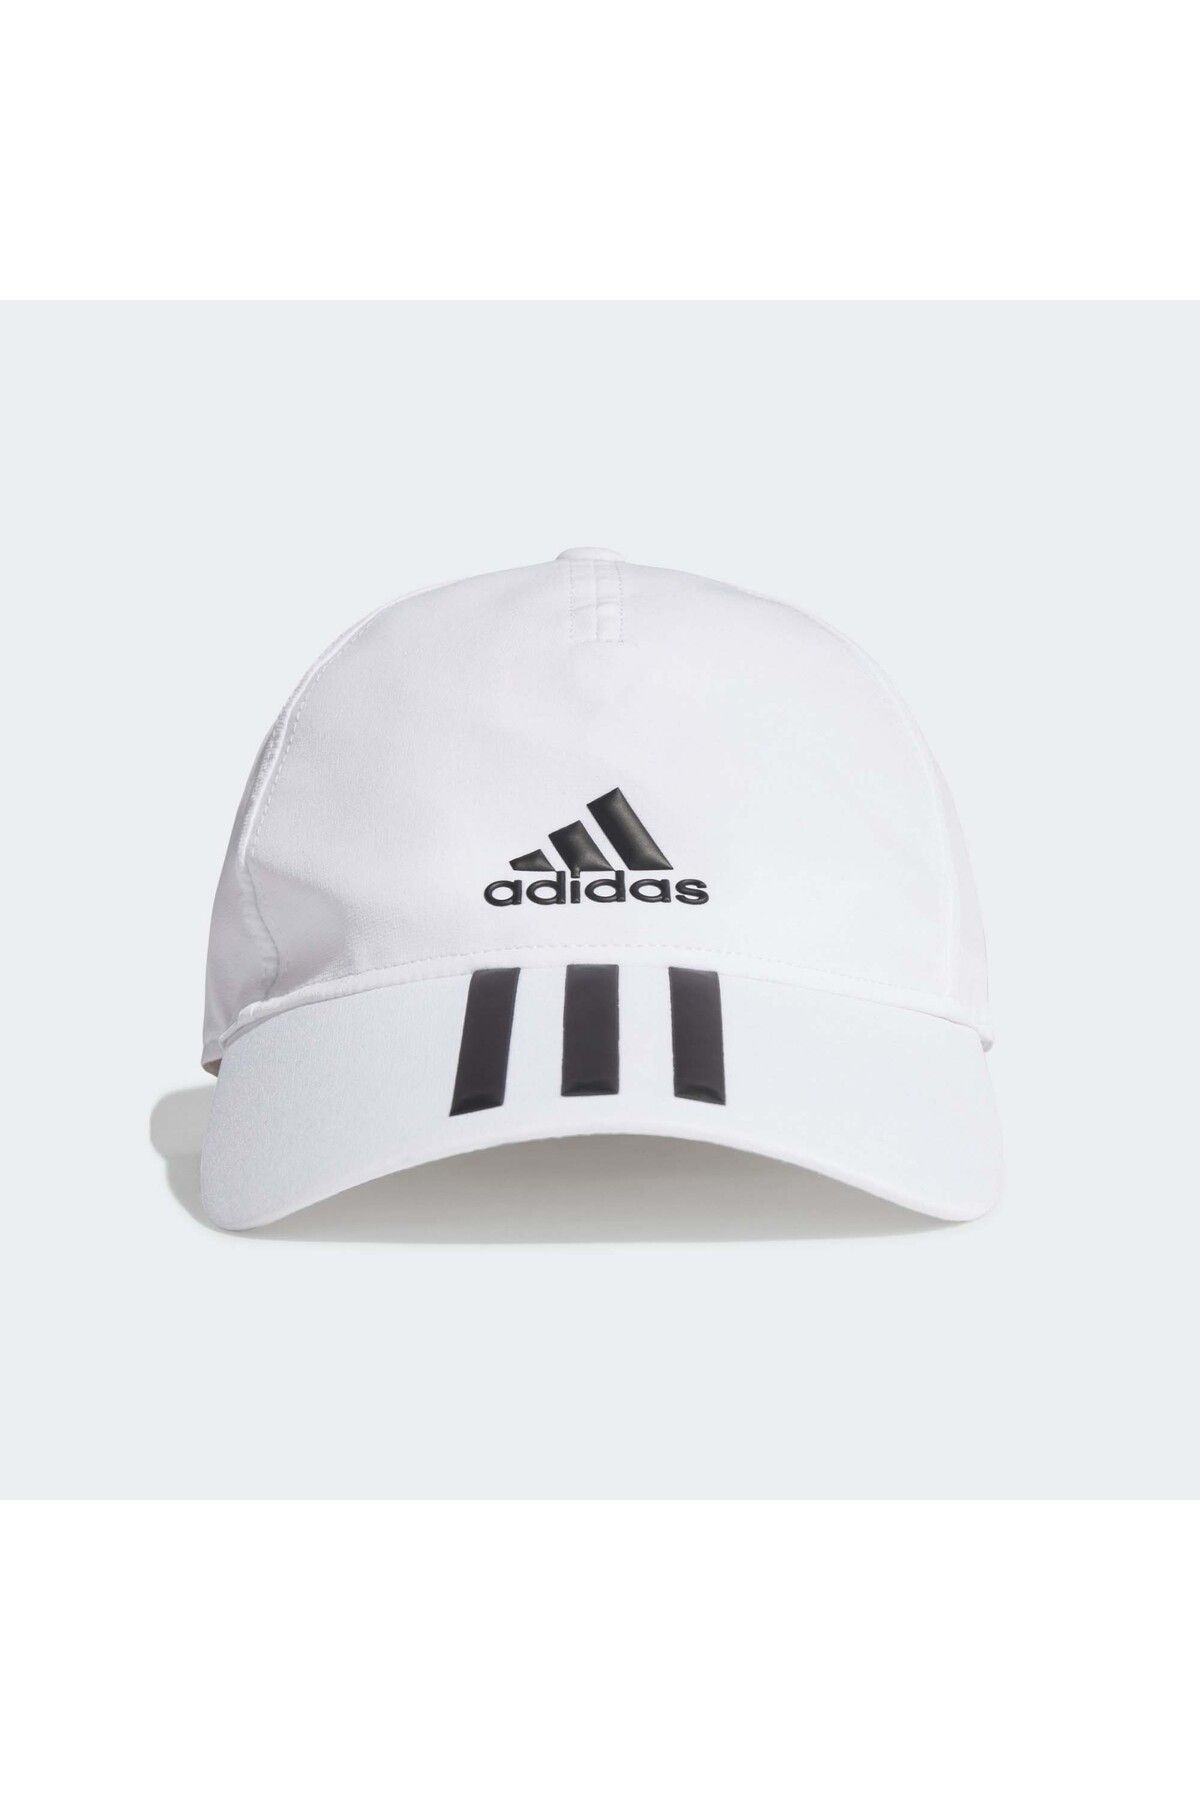 adidas کلاه بیسبال سفید سه راه Aeroready (gm4511)